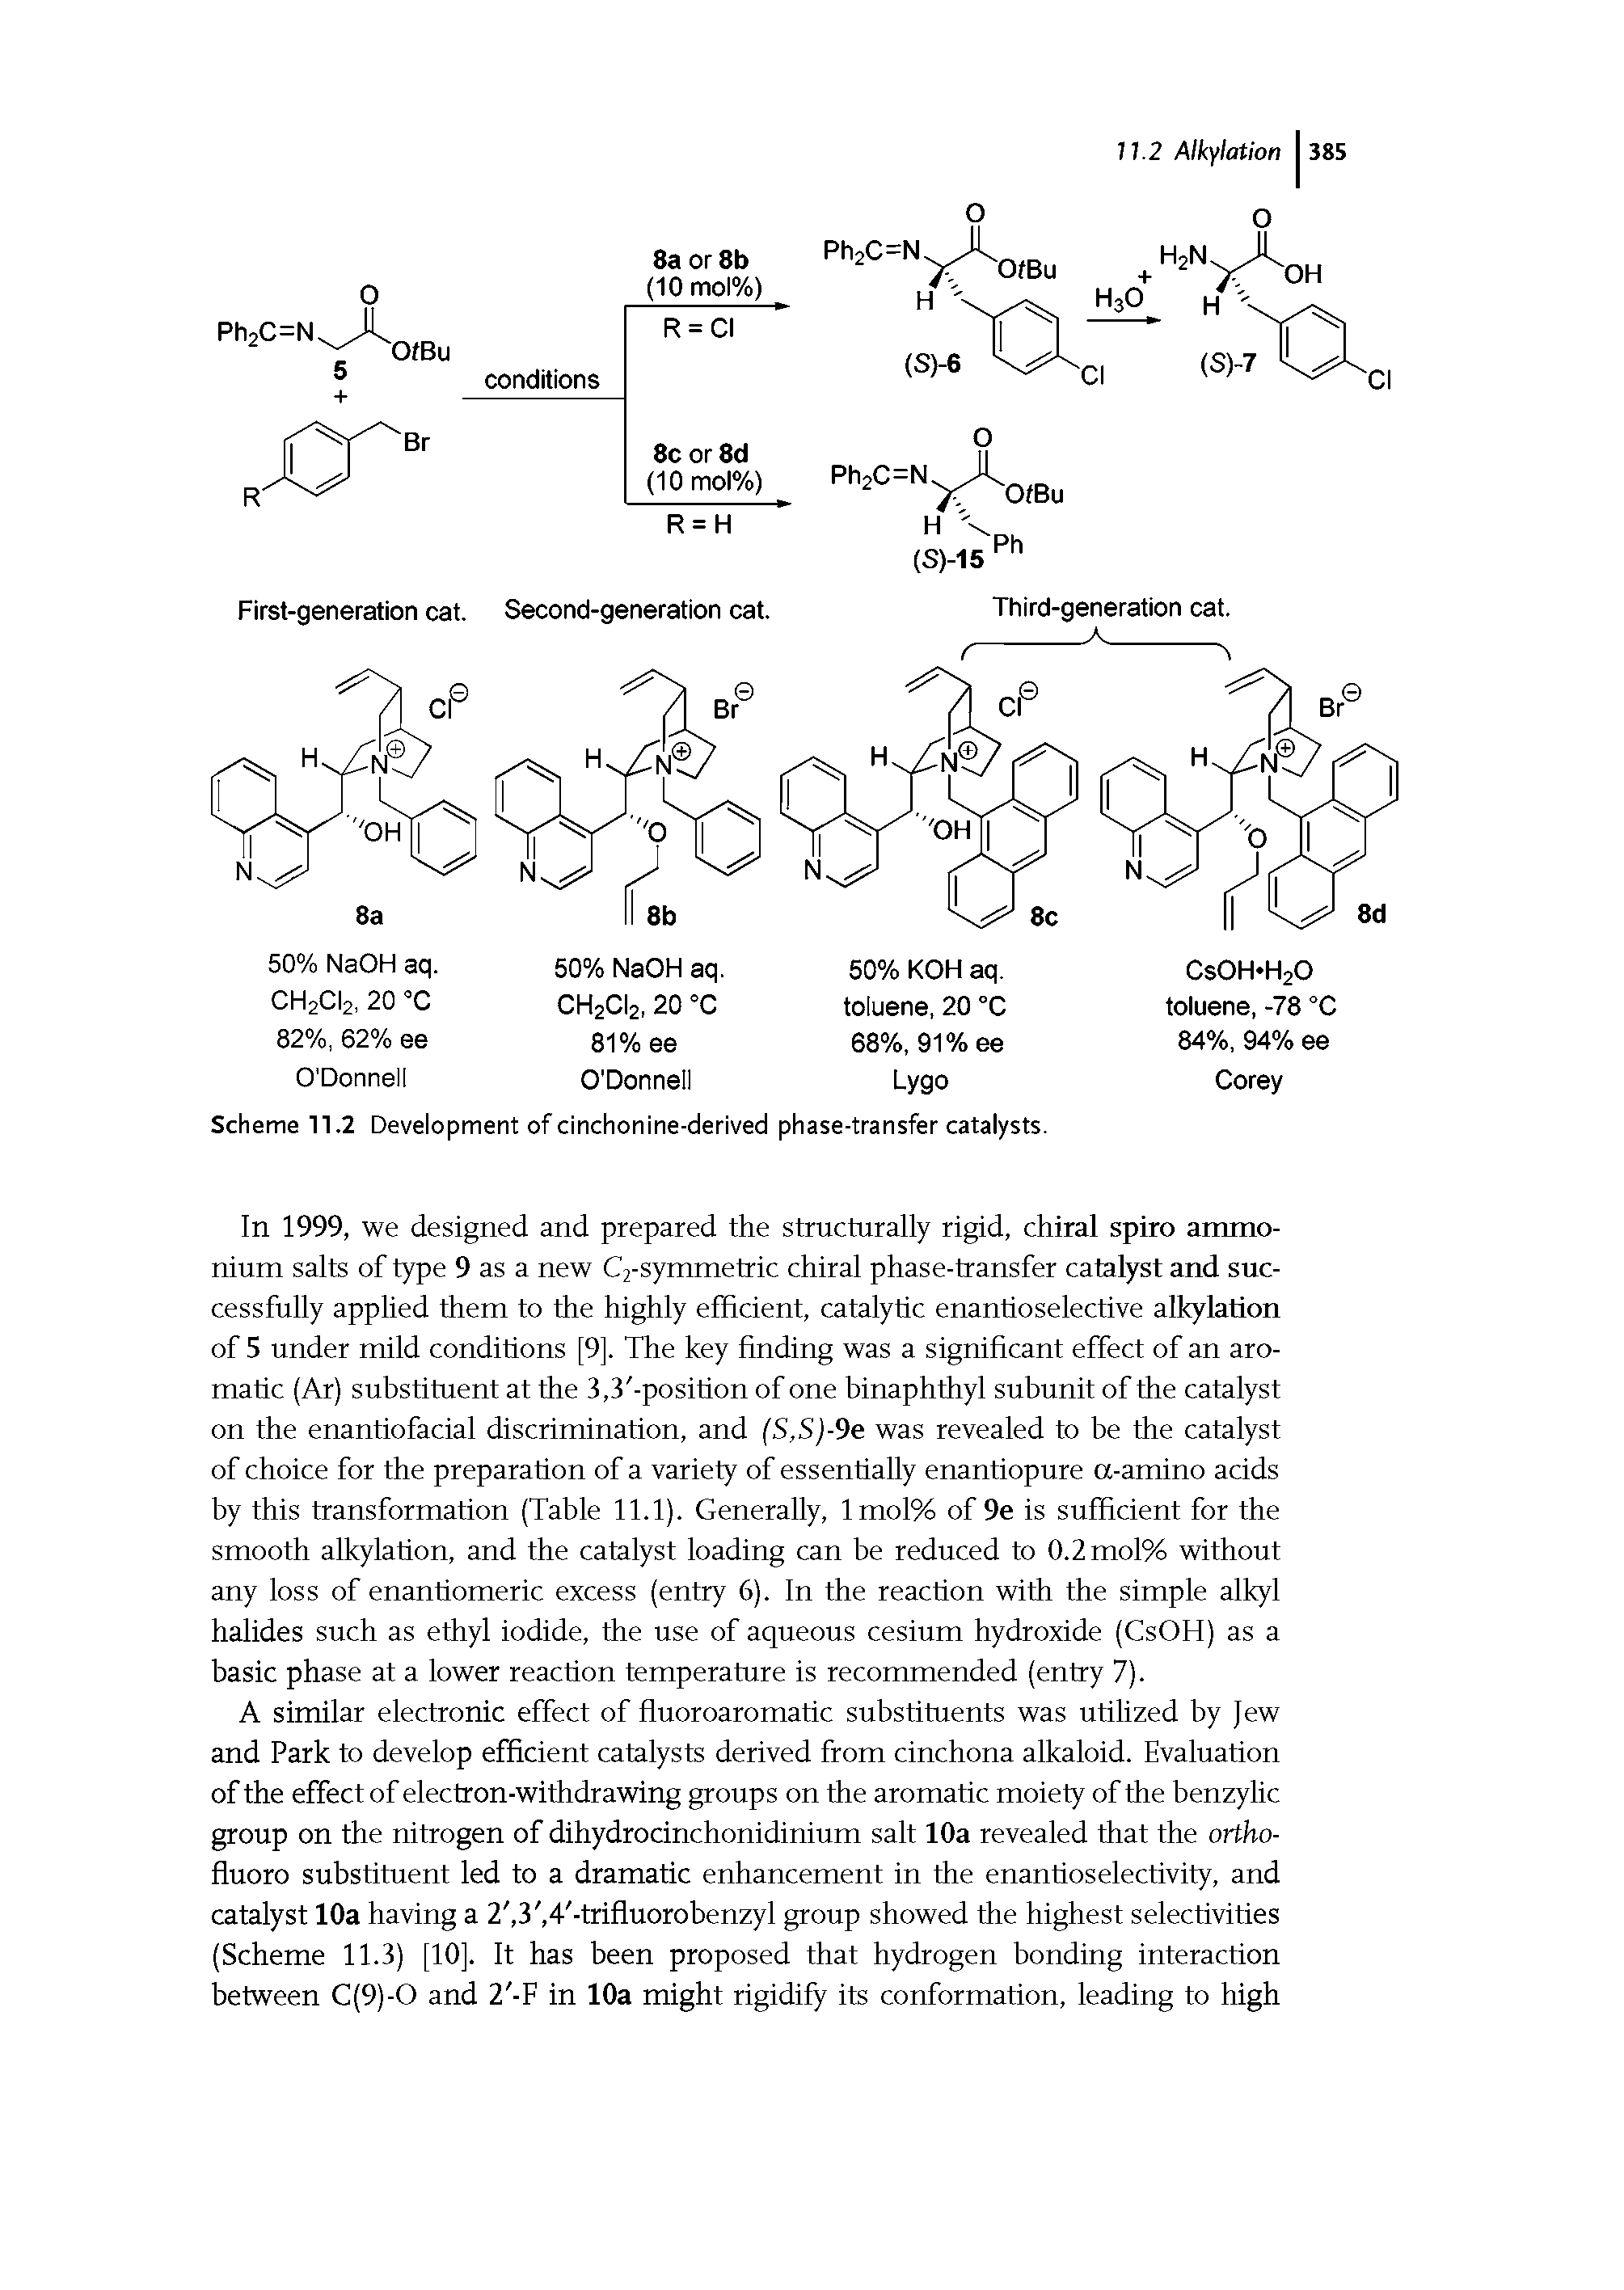 Scheme 11.2 Development of cinchonine-derived phase-transfer catalysts.